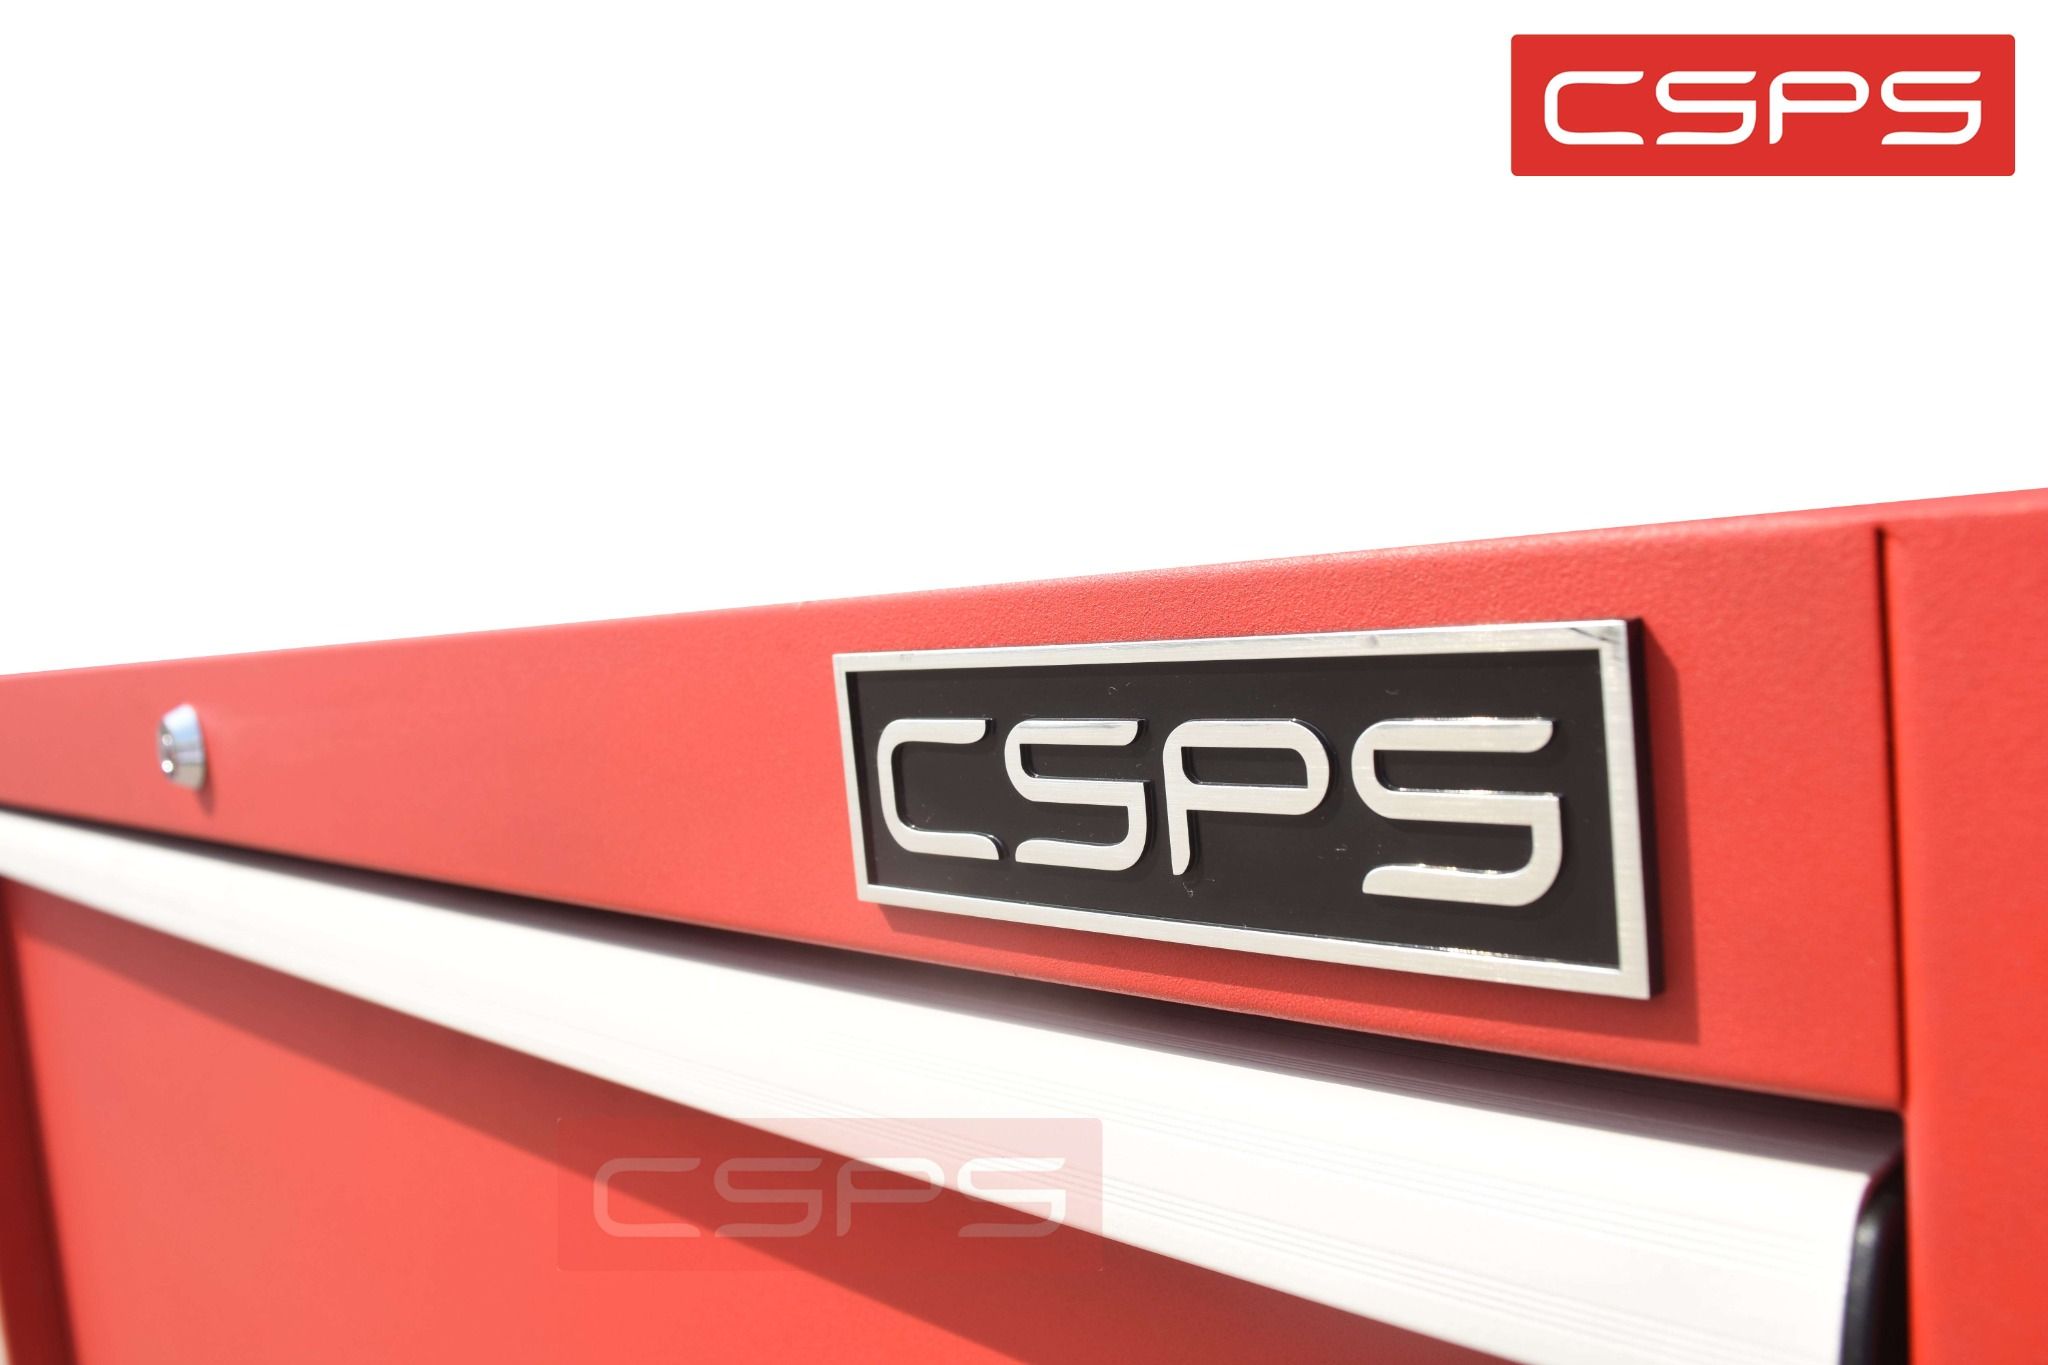  Tủ dụng cụ CSPS 91cm đen/đỏ - 02 hộc kéo 